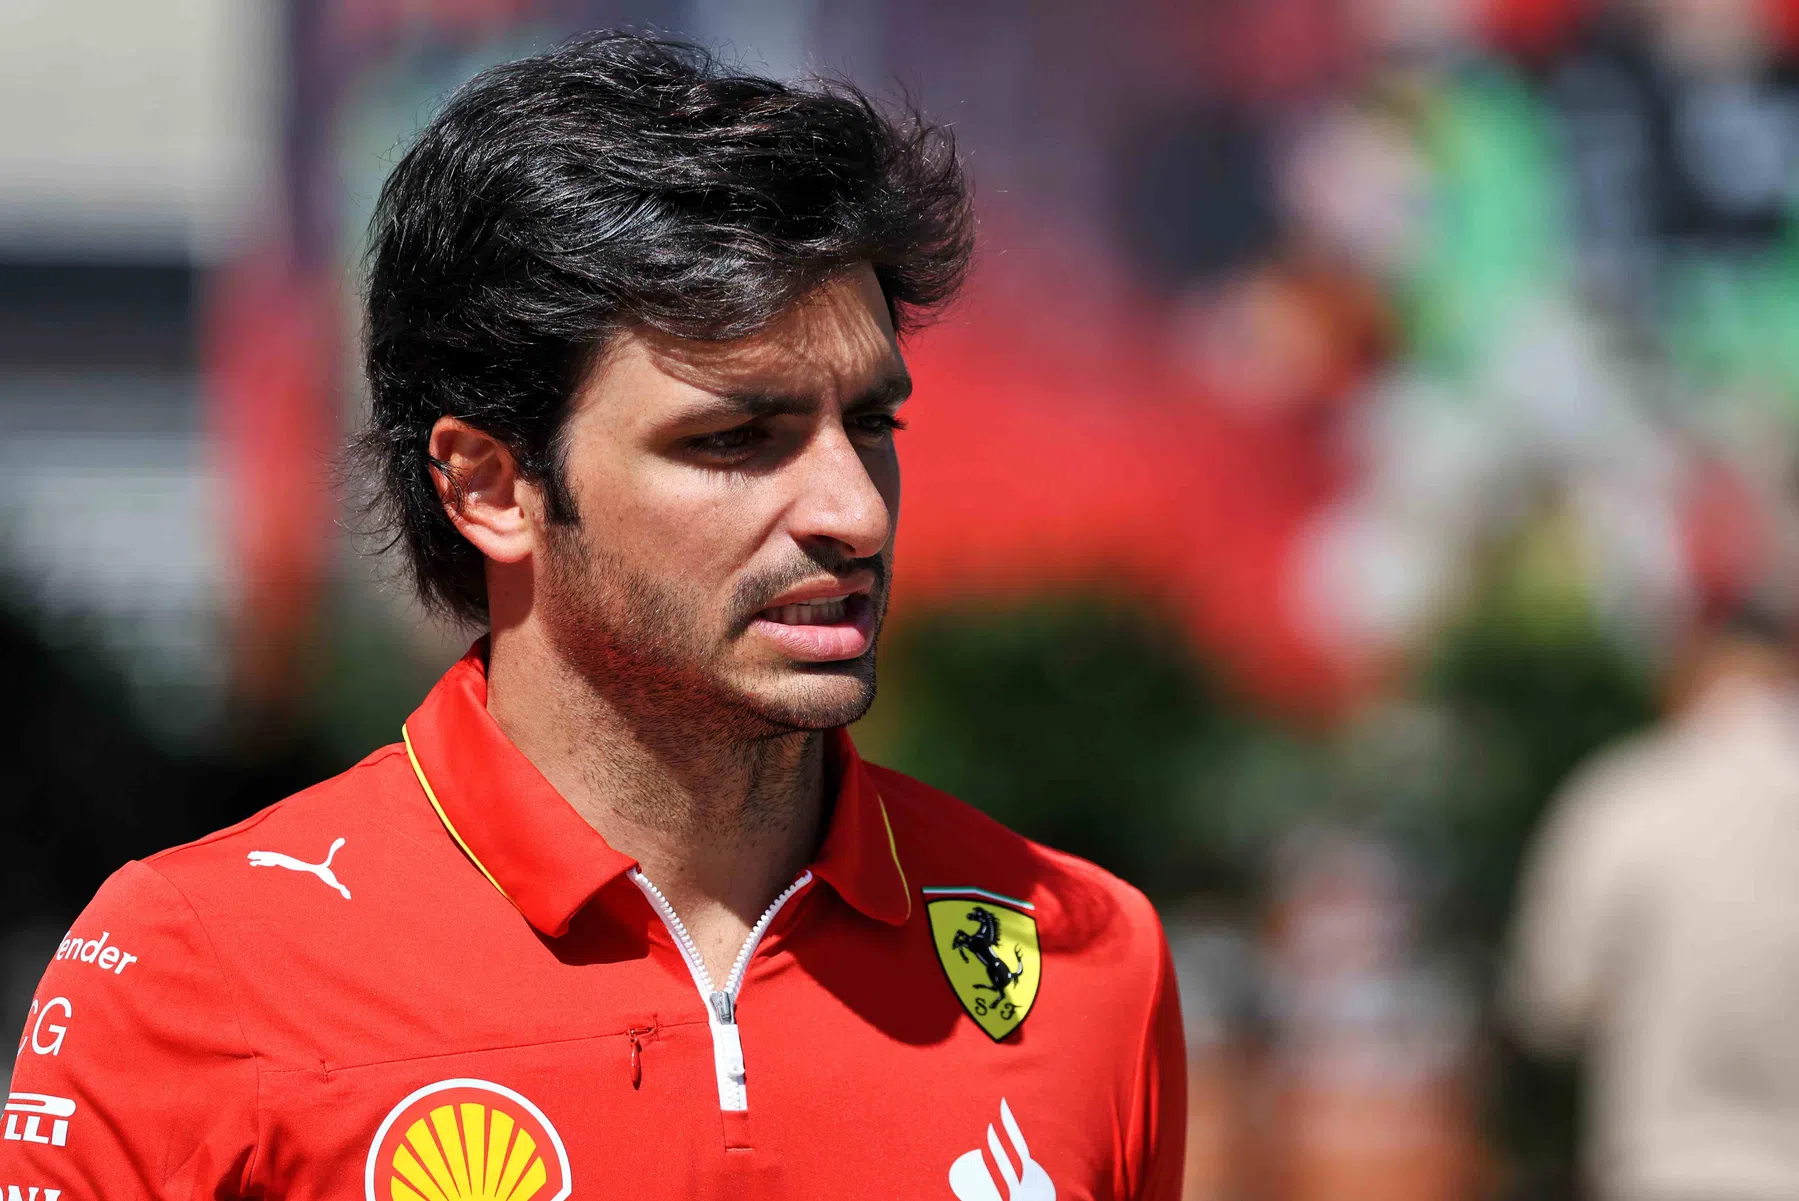 Plannen Sainz niet veranderd door contractverlenging Alonso